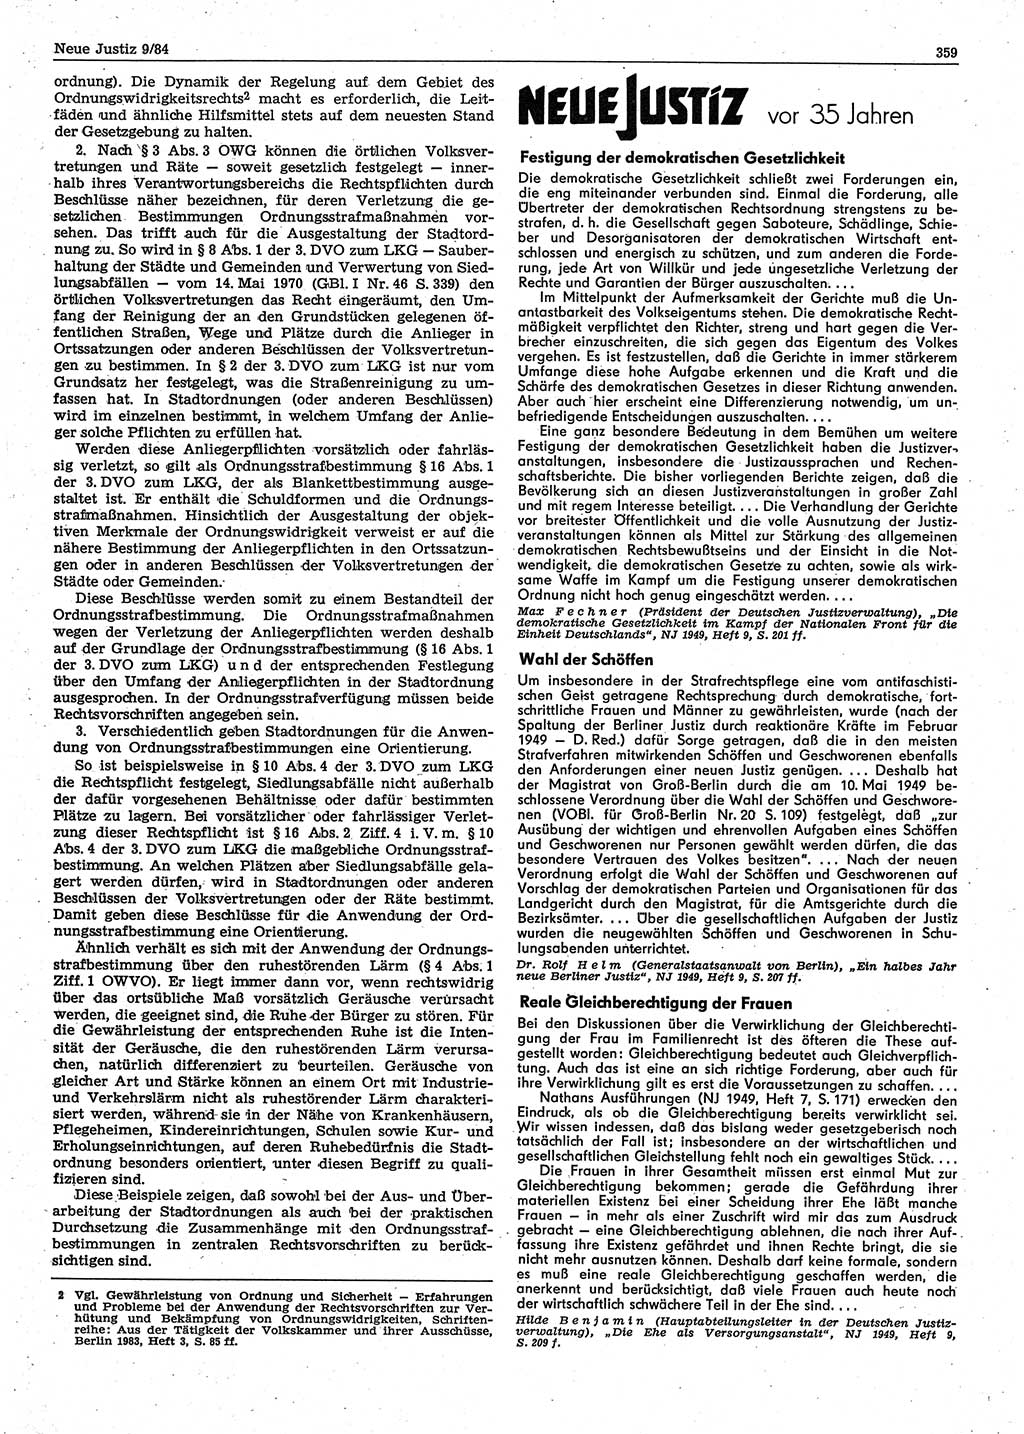 Neue Justiz (NJ), Zeitschrift für sozialistisches Recht und Gesetzlichkeit [Deutsche Demokratische Republik (DDR)], 38. Jahrgang 1984, Seite 359 (NJ DDR 1984, S. 359)